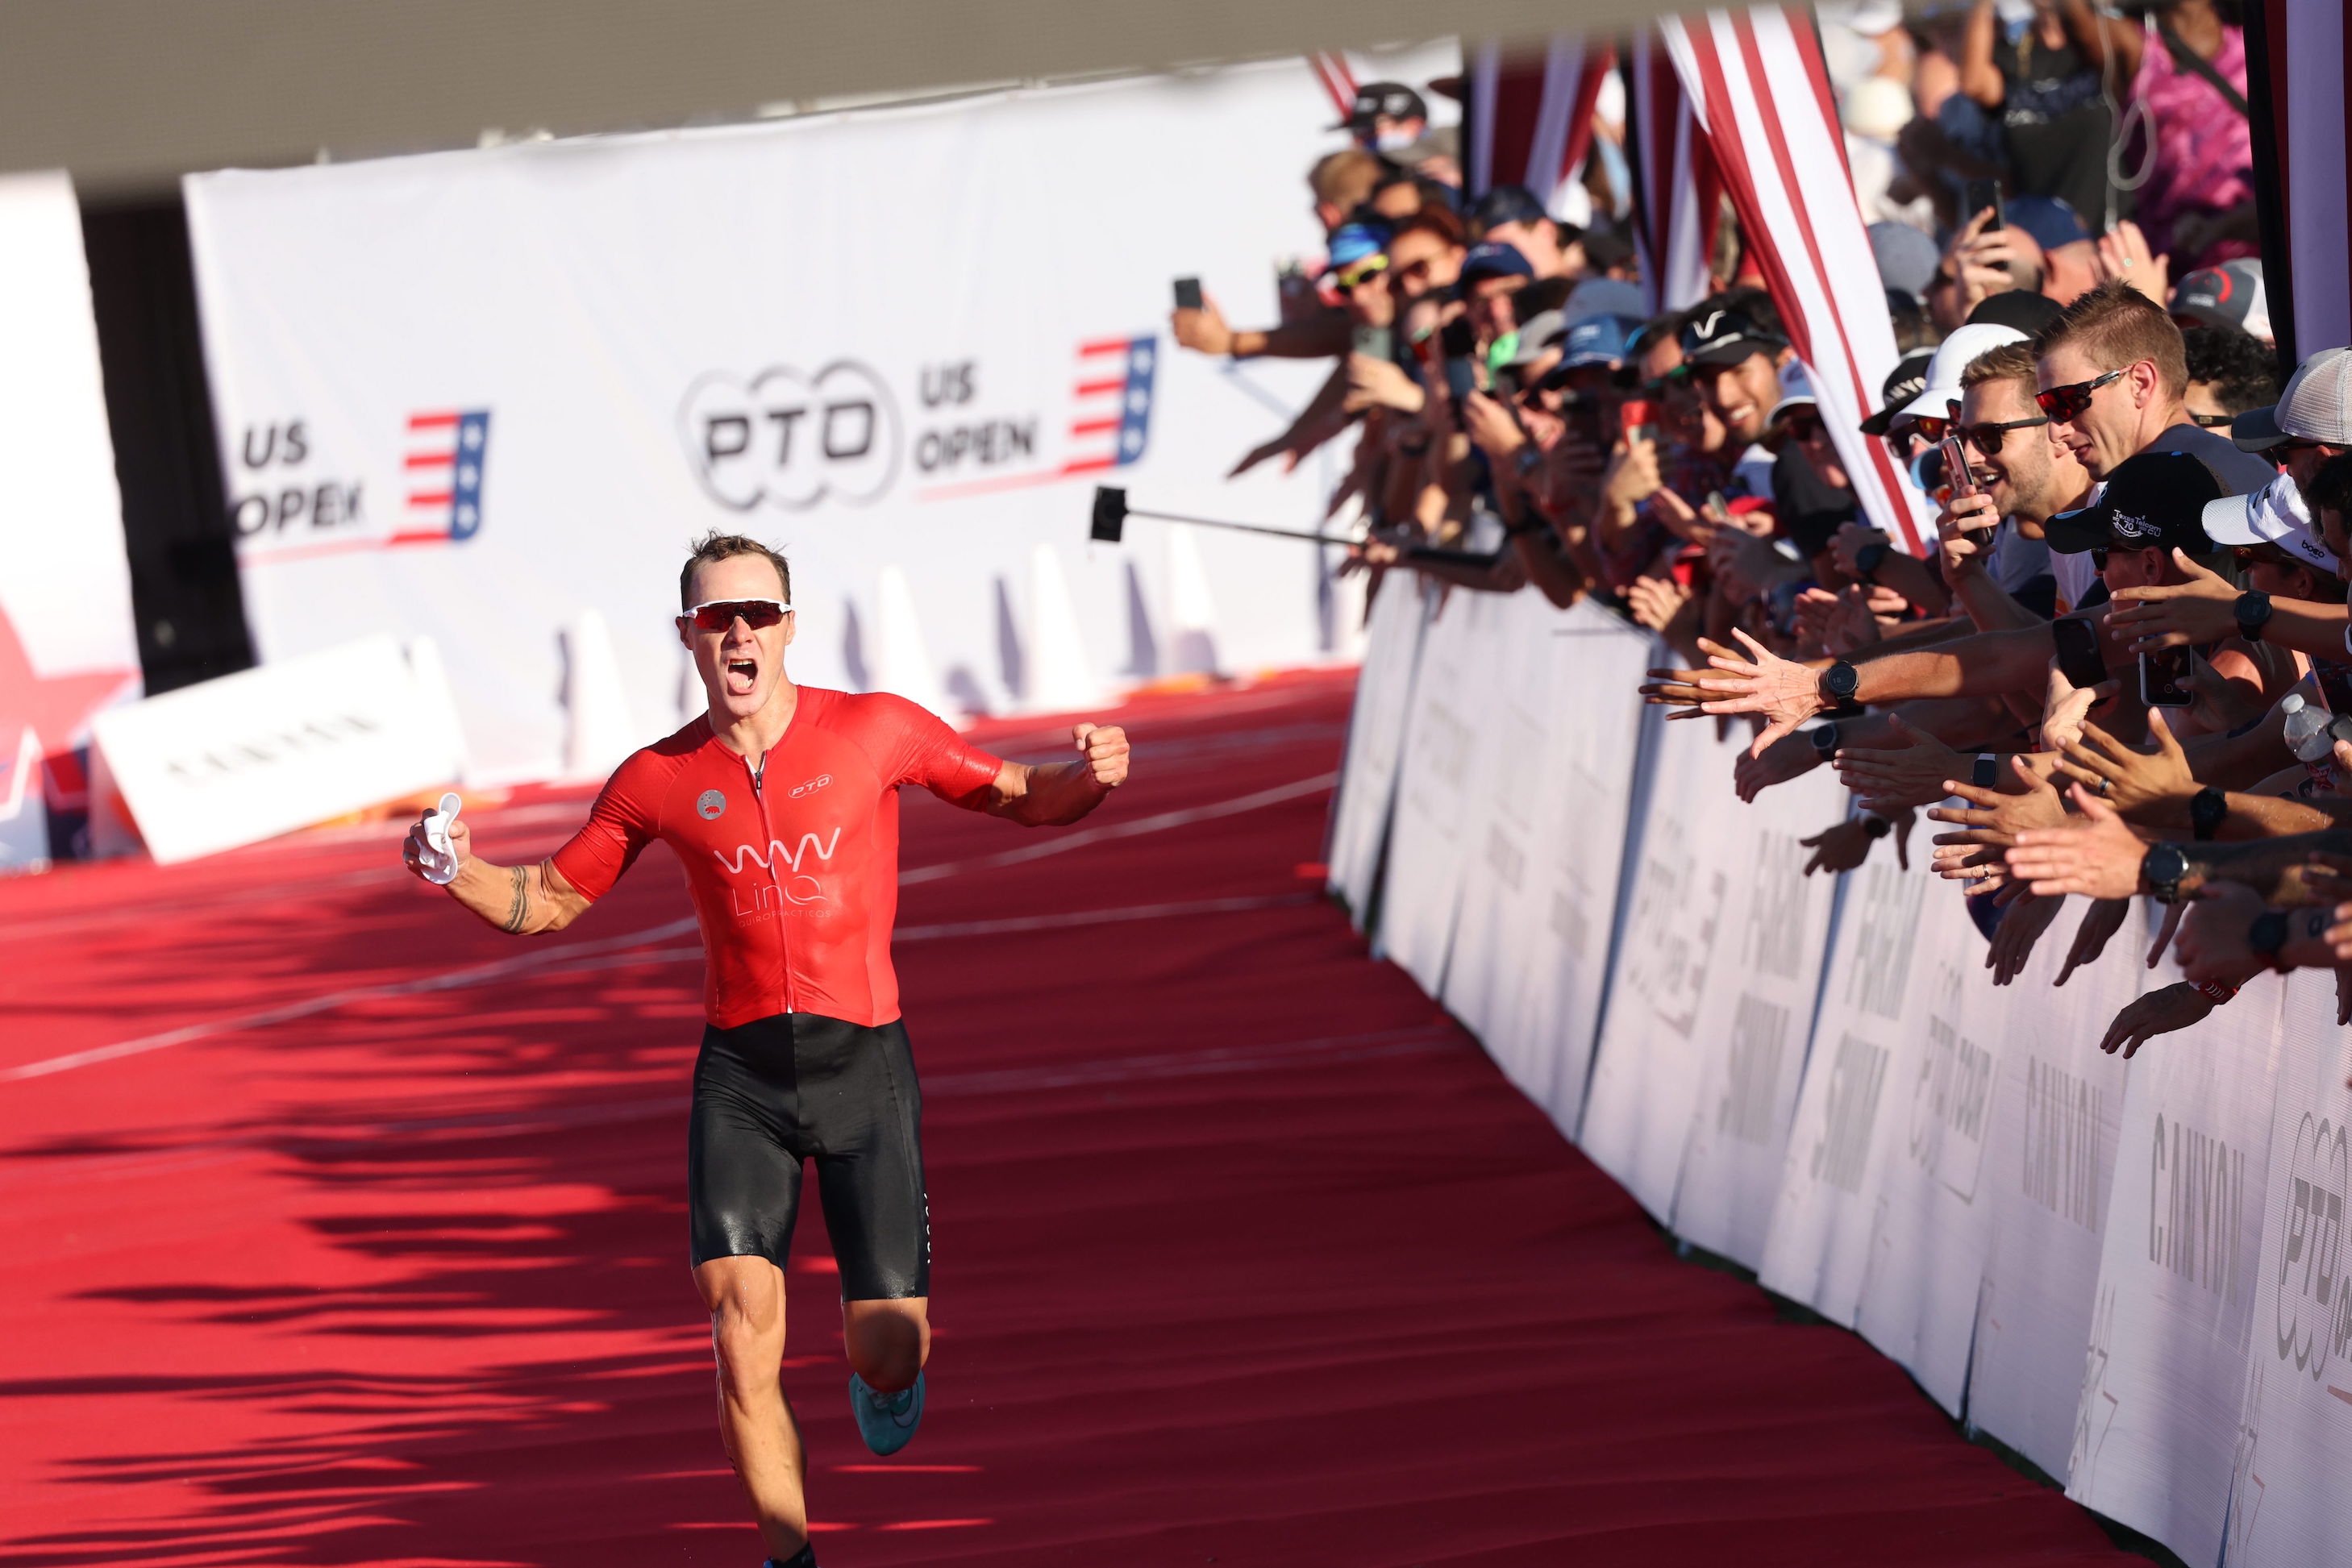 American triathlete Collin Chartier wins the PTO US Open in Dallas, 18 September 2022 